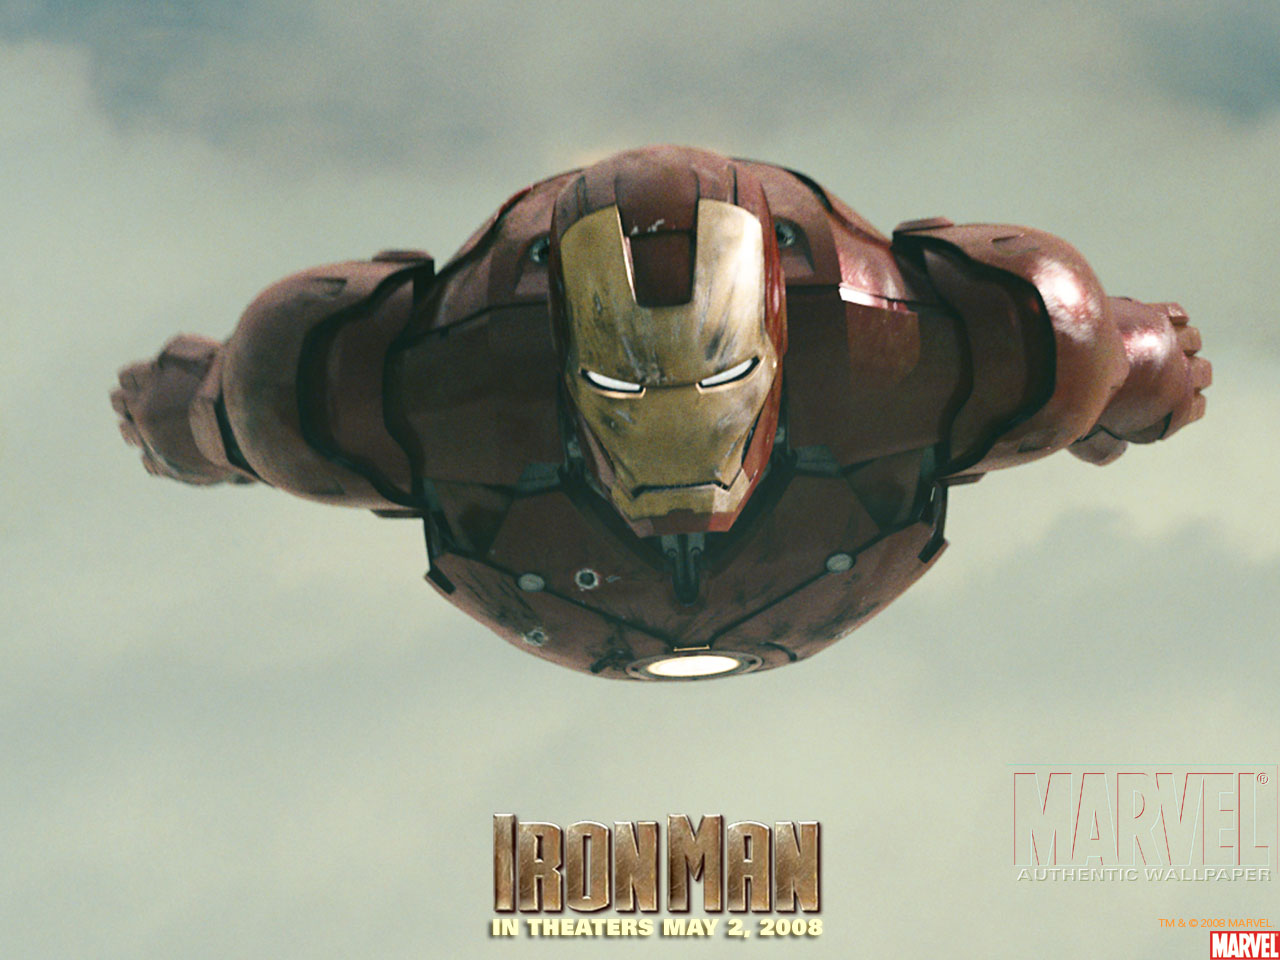 Iron Man Wallpaper - Iron Man Twitter Header , HD Wallpaper & Backgrounds